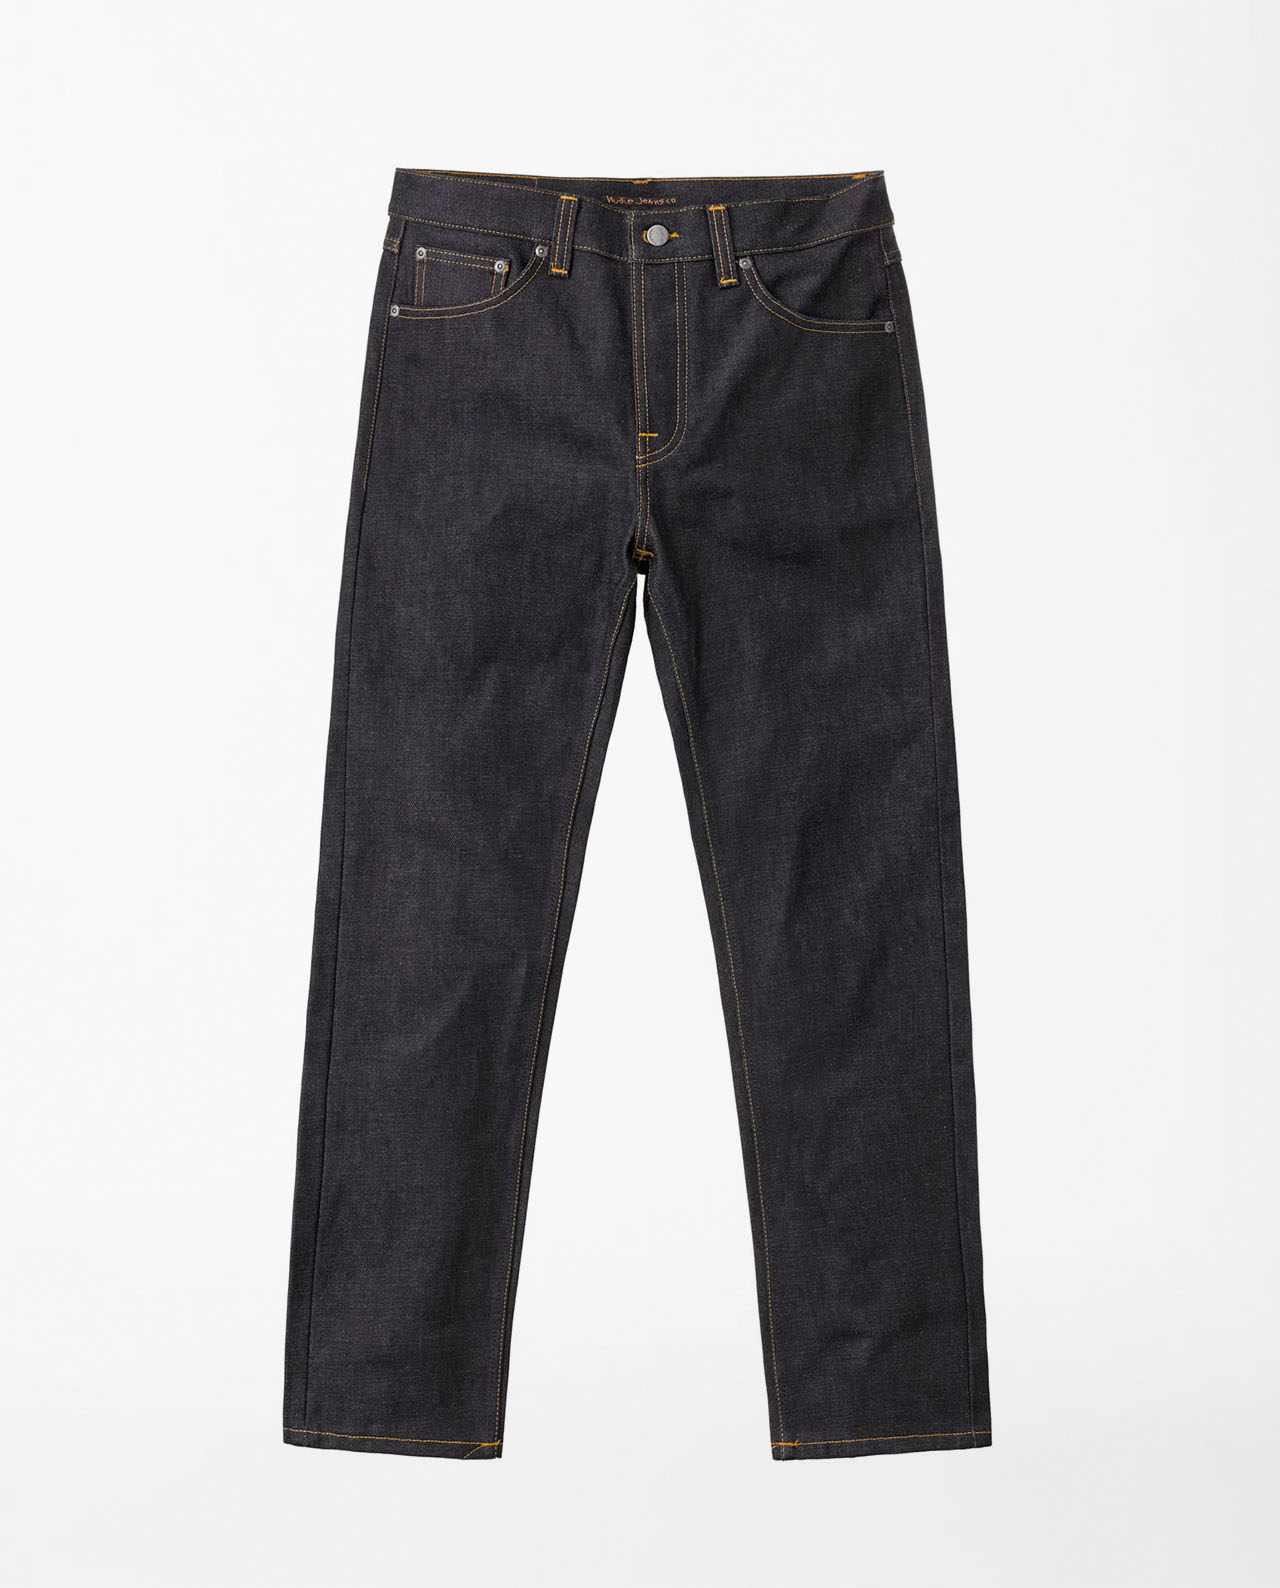 marché commun nudie jeans rad rufus dry deluxe jean homme coton biologique brut toile japonaise éco-responsable